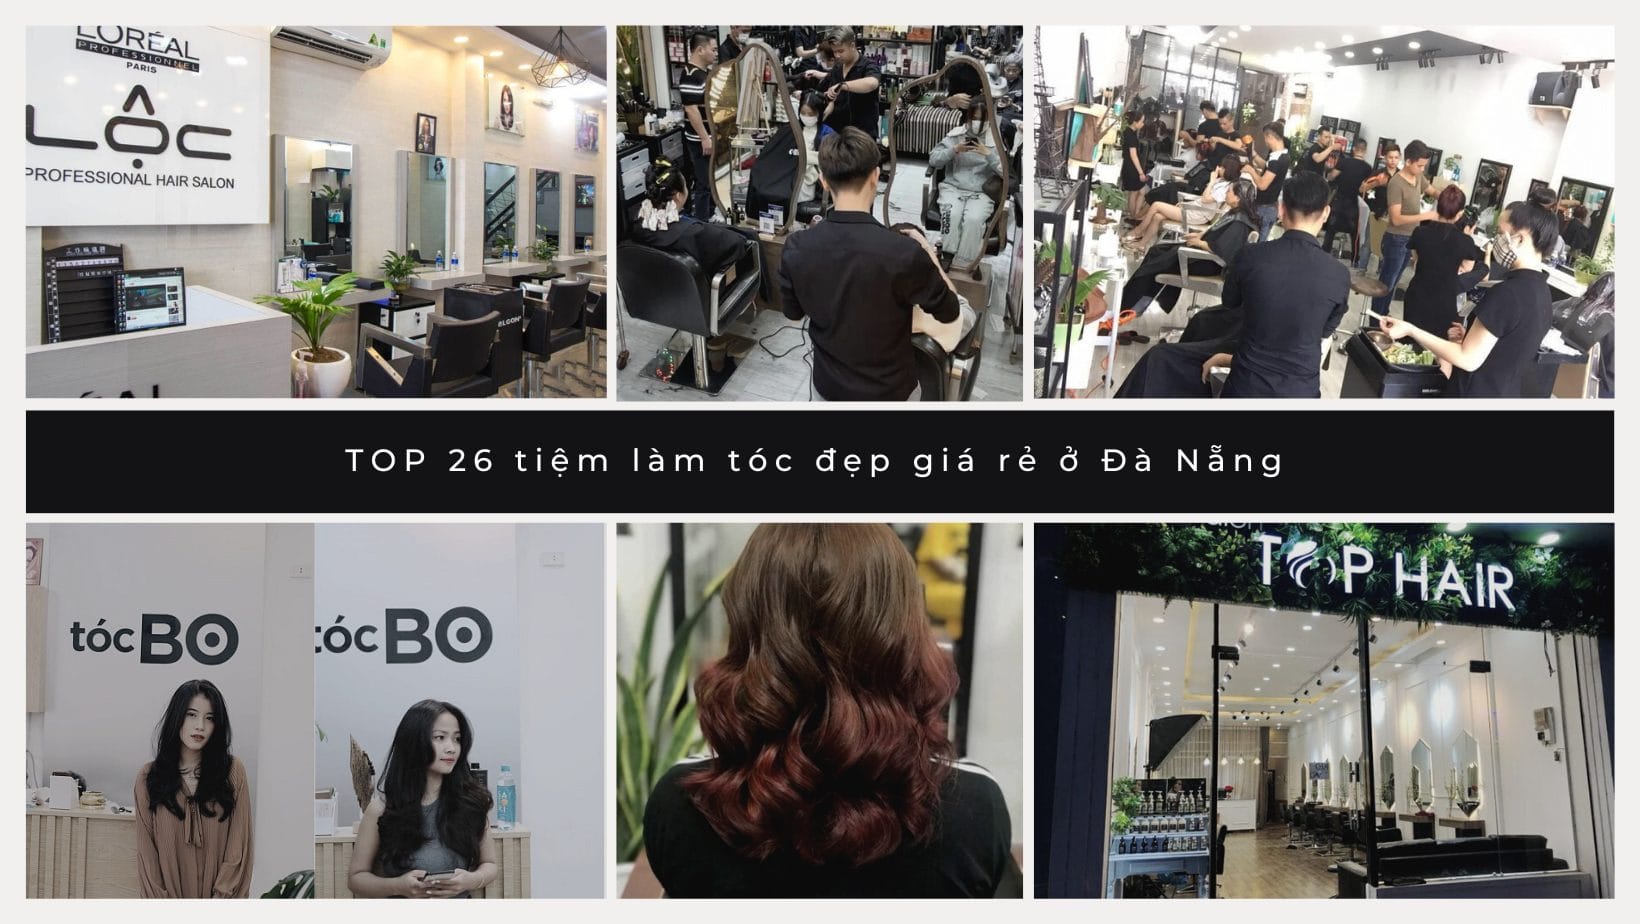 TOP 26 tiệm làm tóc đẹp giá rẻ ở Đà Nẵng